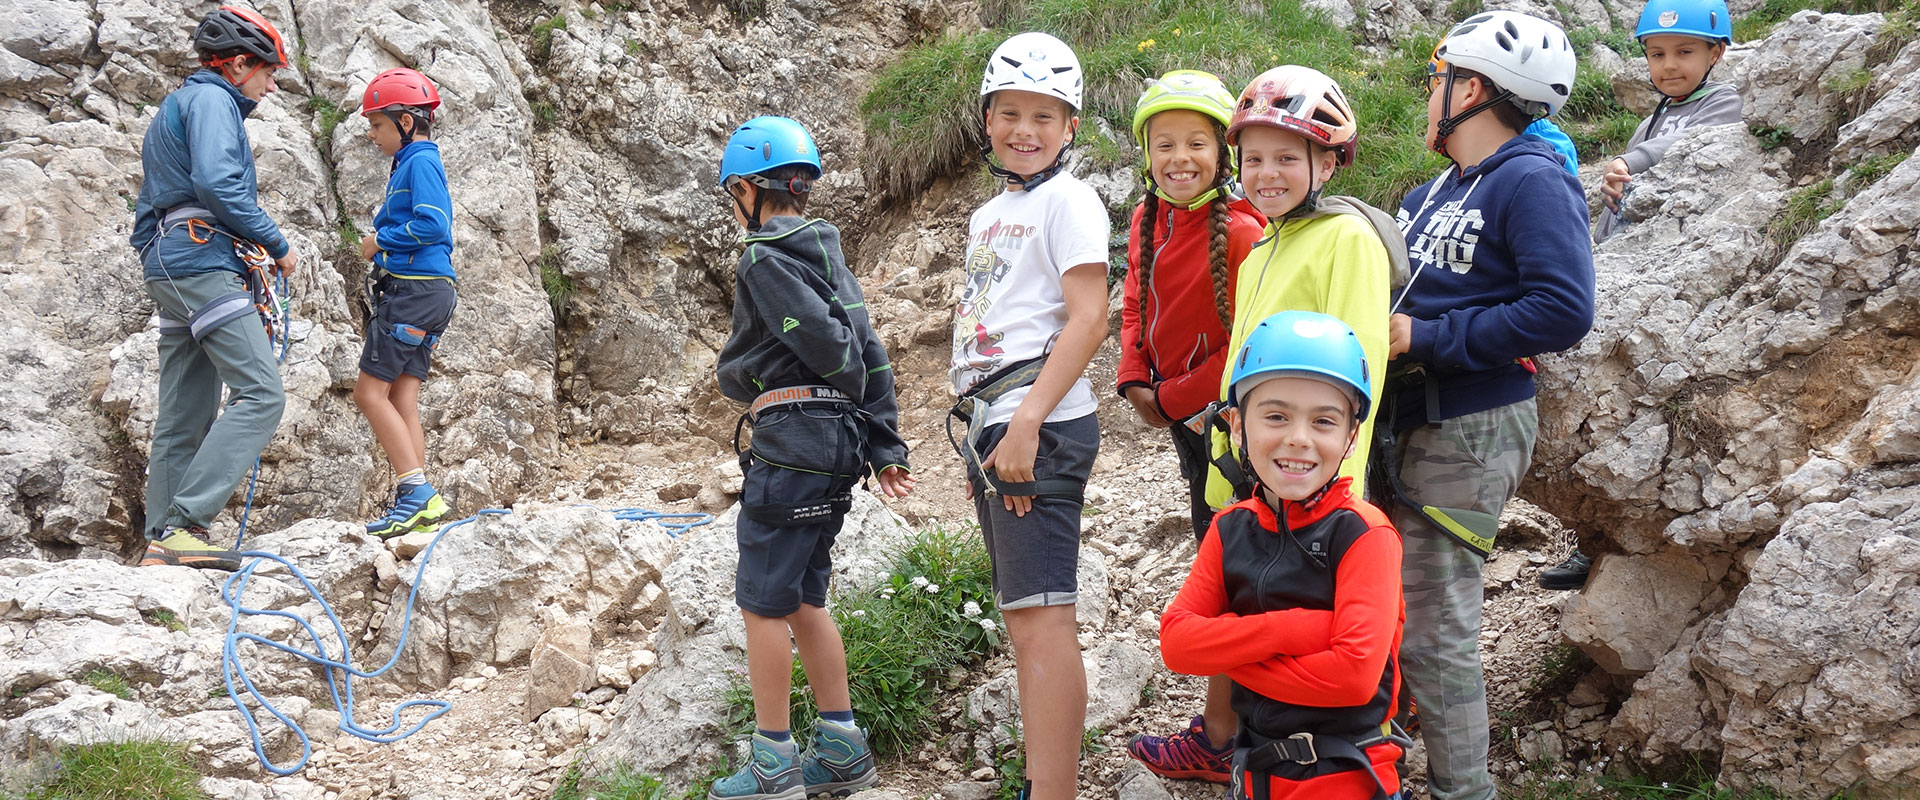 Corso di arrampicata per la famiglia - giornata di avventura per ragazzi e  bambini